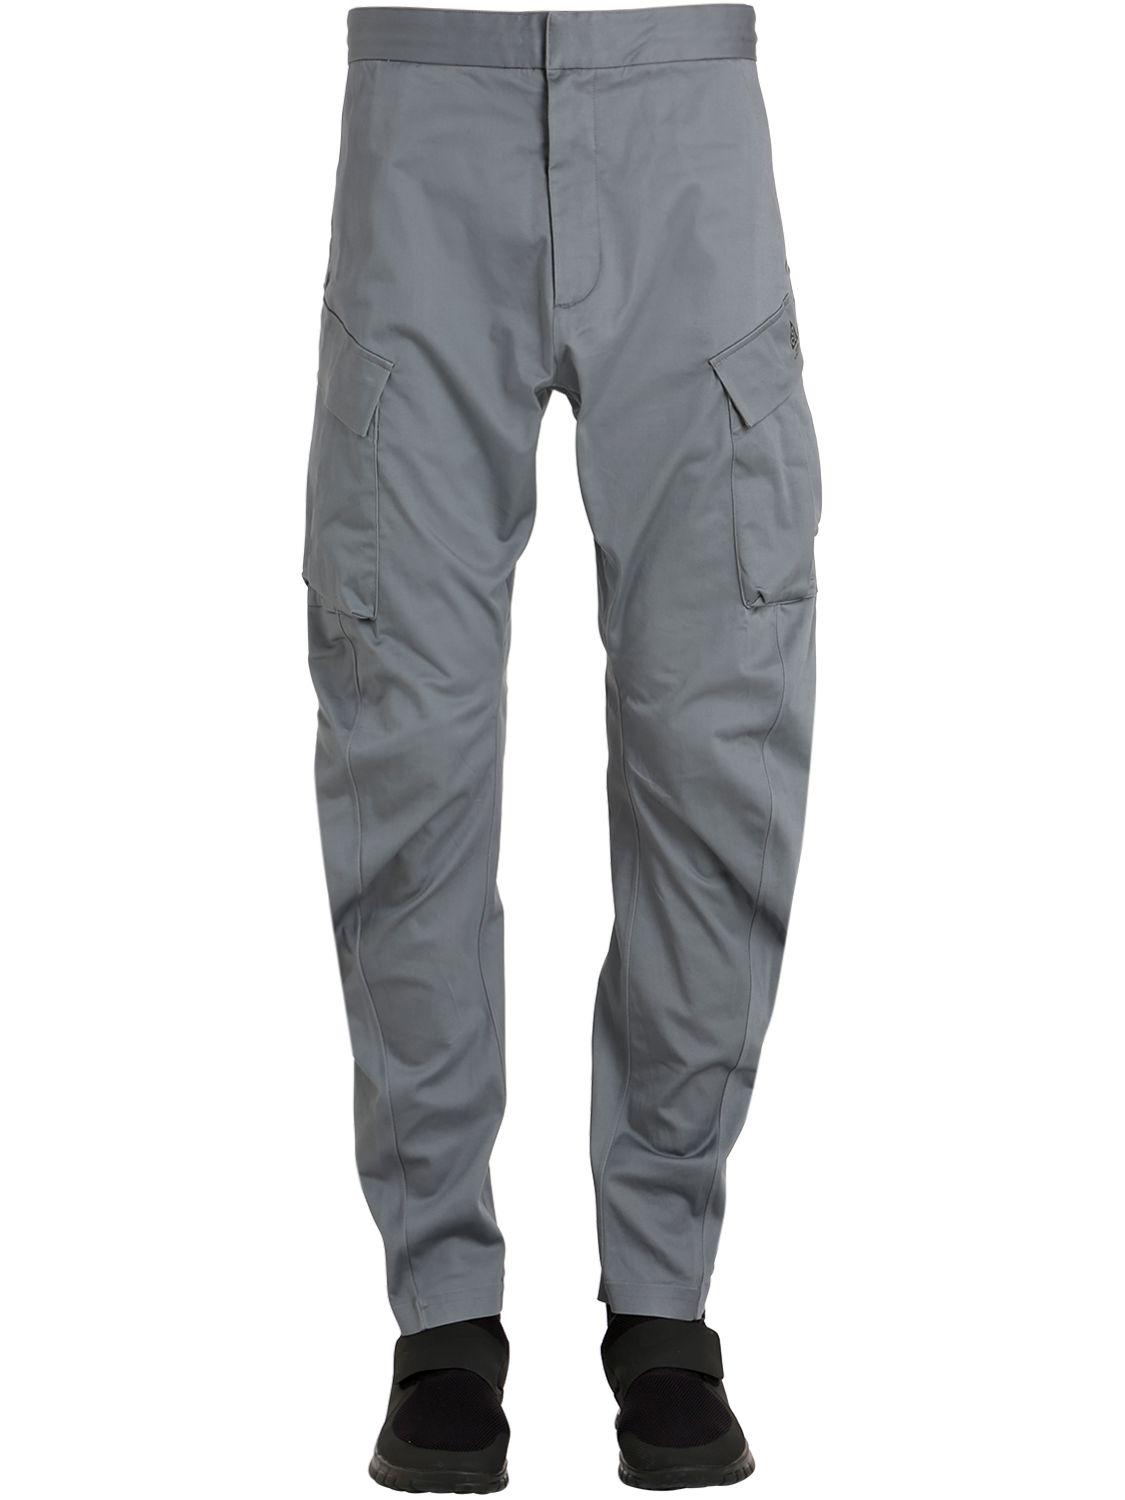 grey nike cargo pants